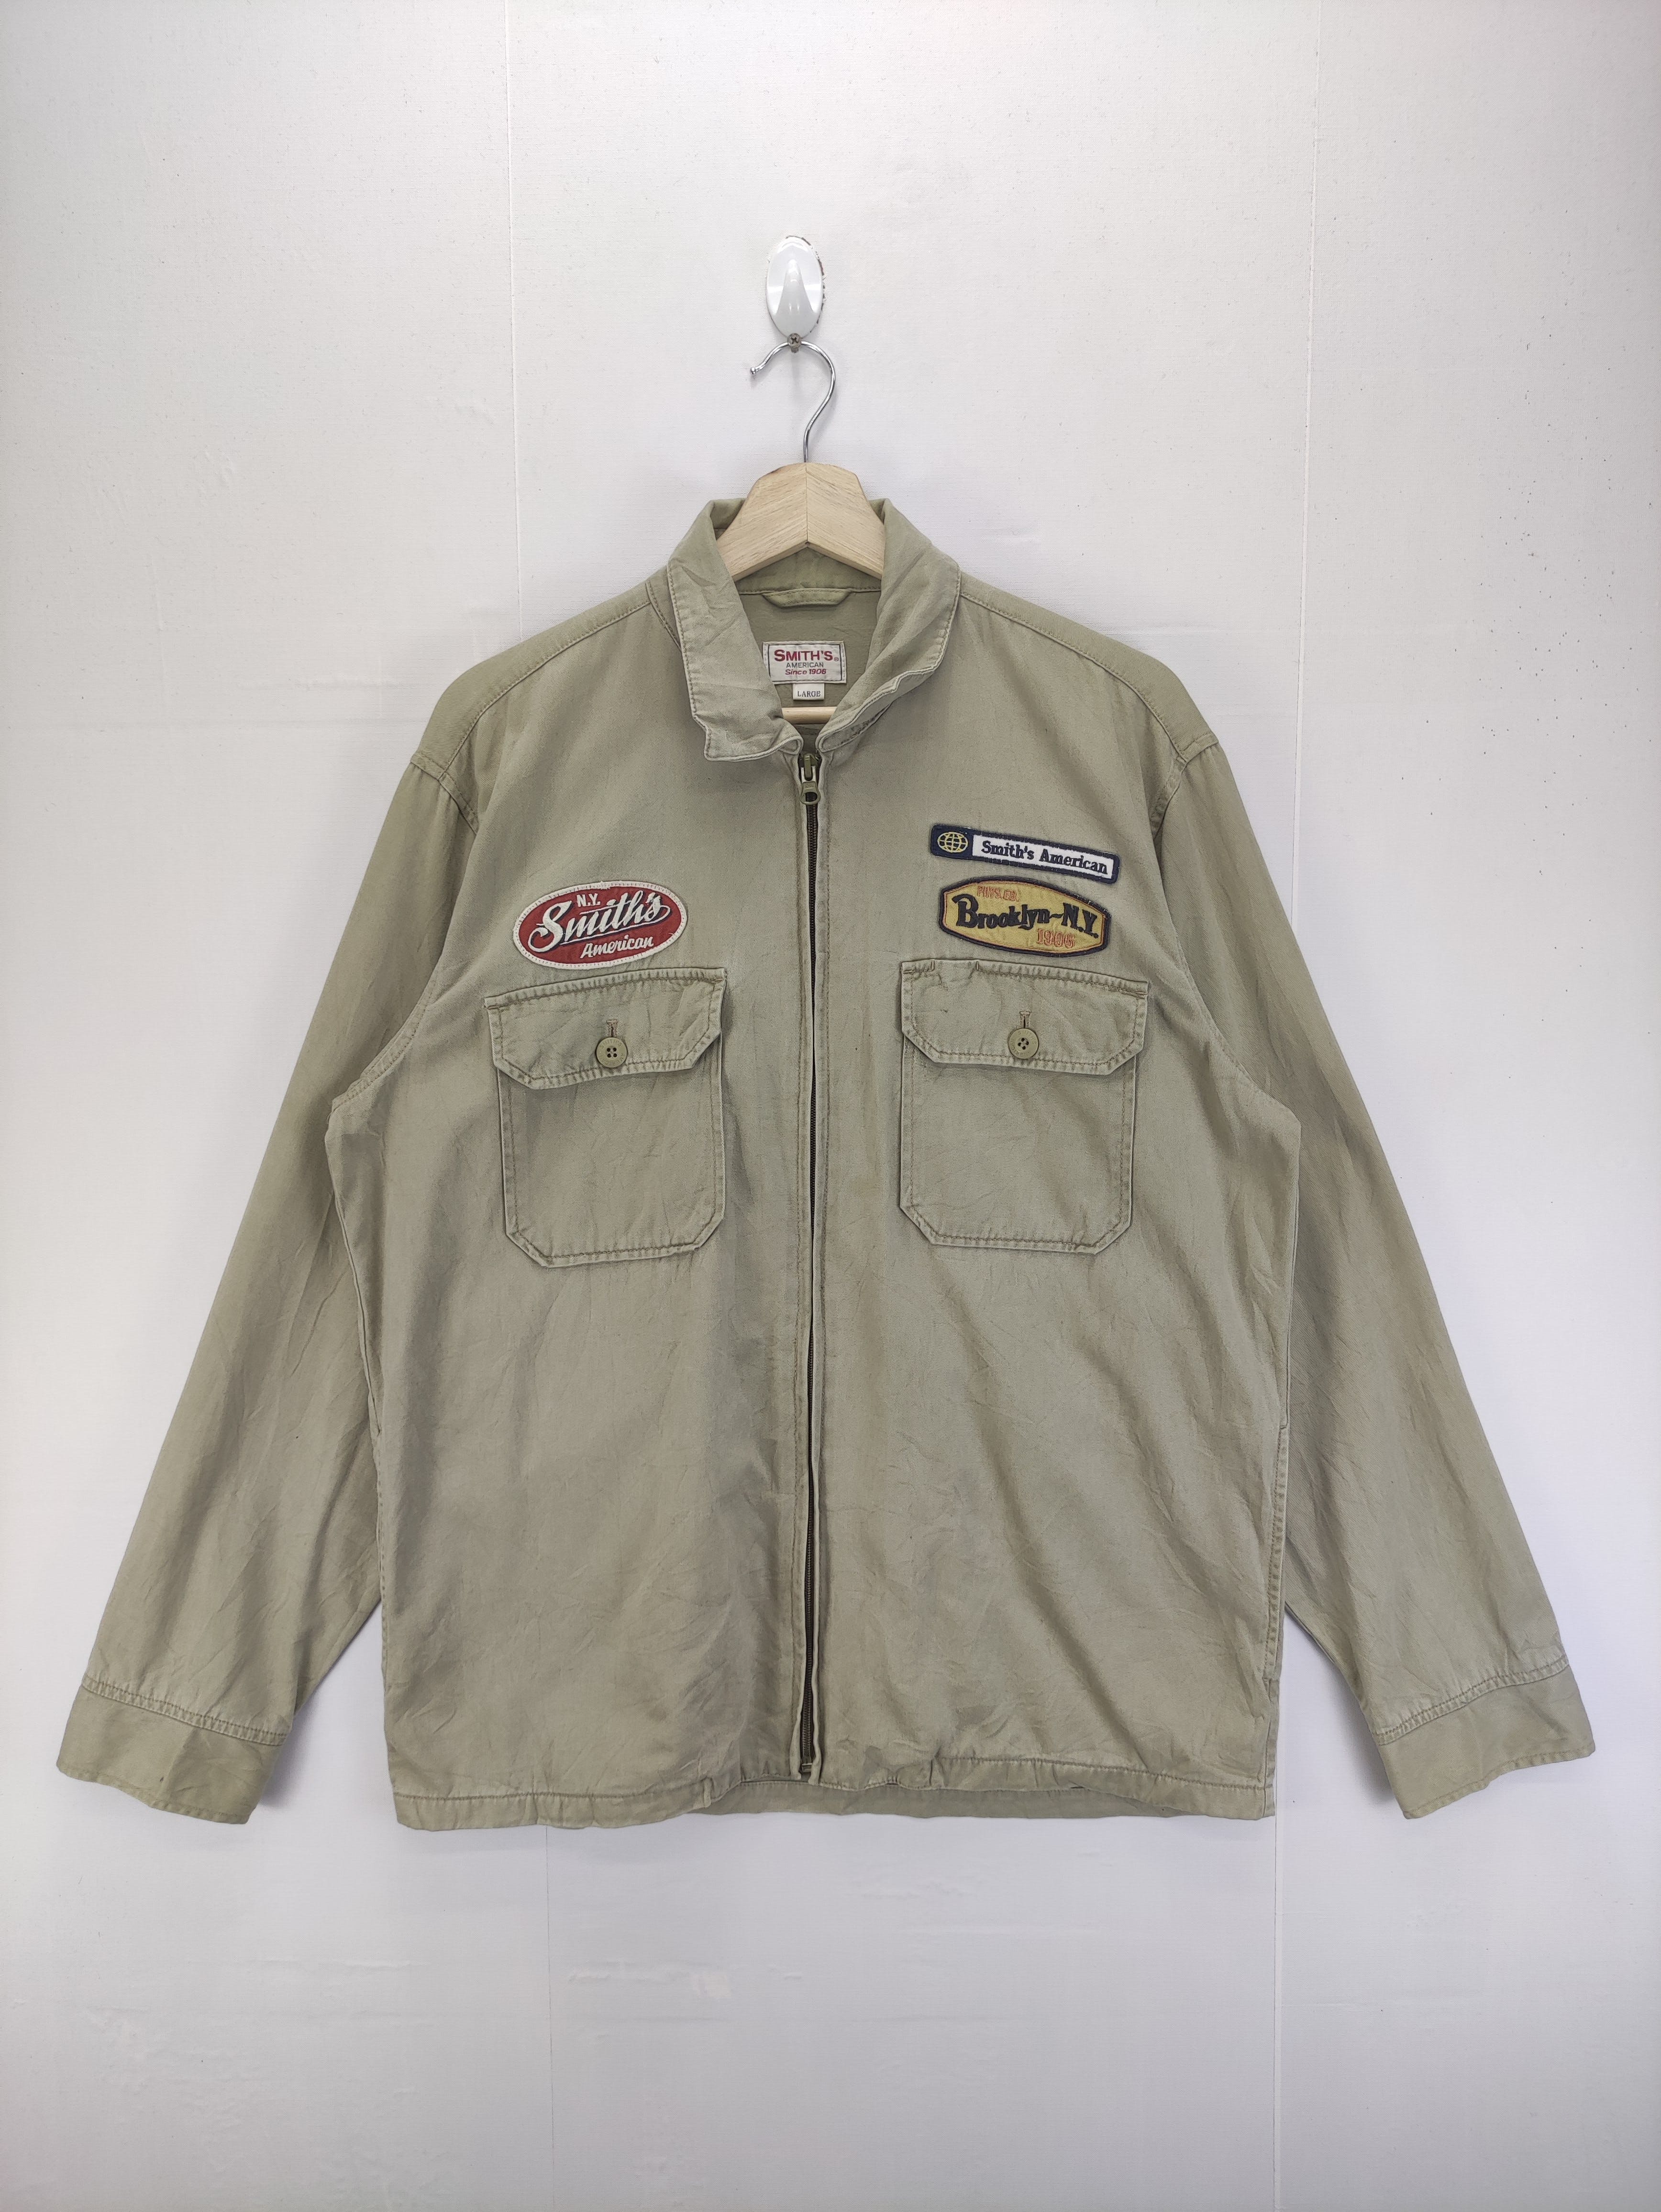 Vintage Smith's Work Wear Jacket Zipper - 1